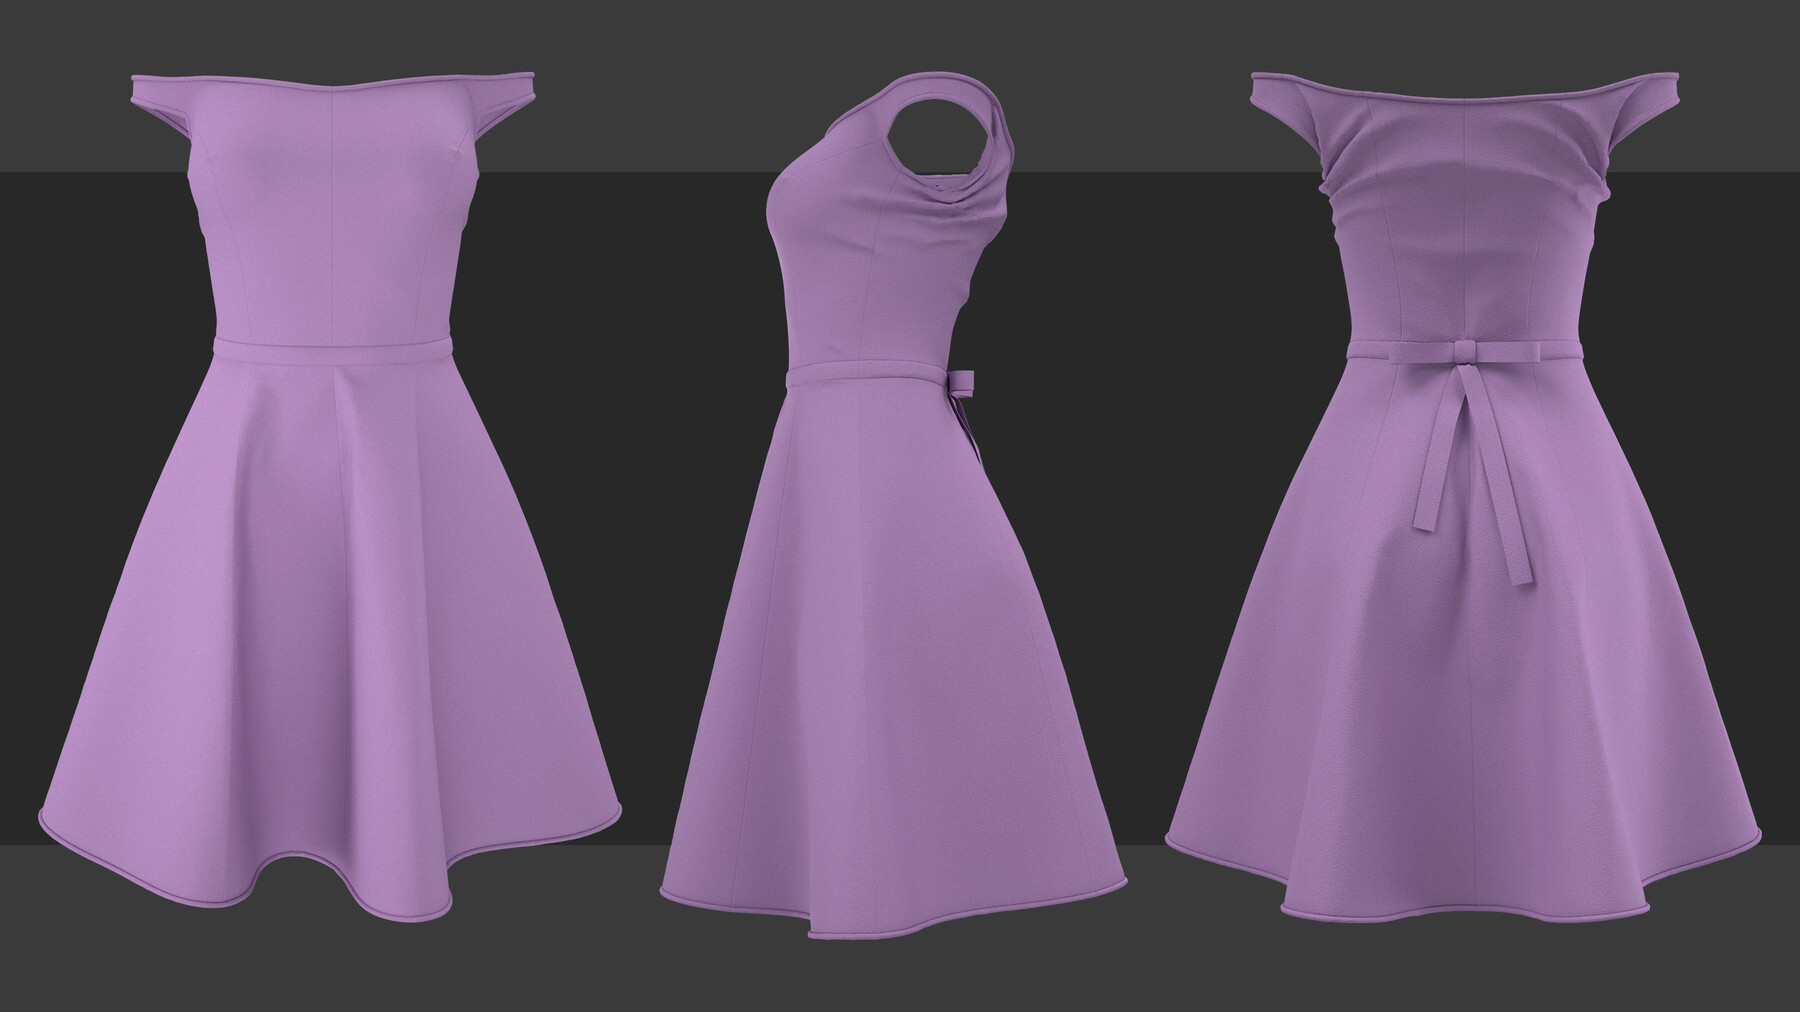 ArtStation - Dress pack 8. Clo3d, Marvelous Designer projects. | Game ...